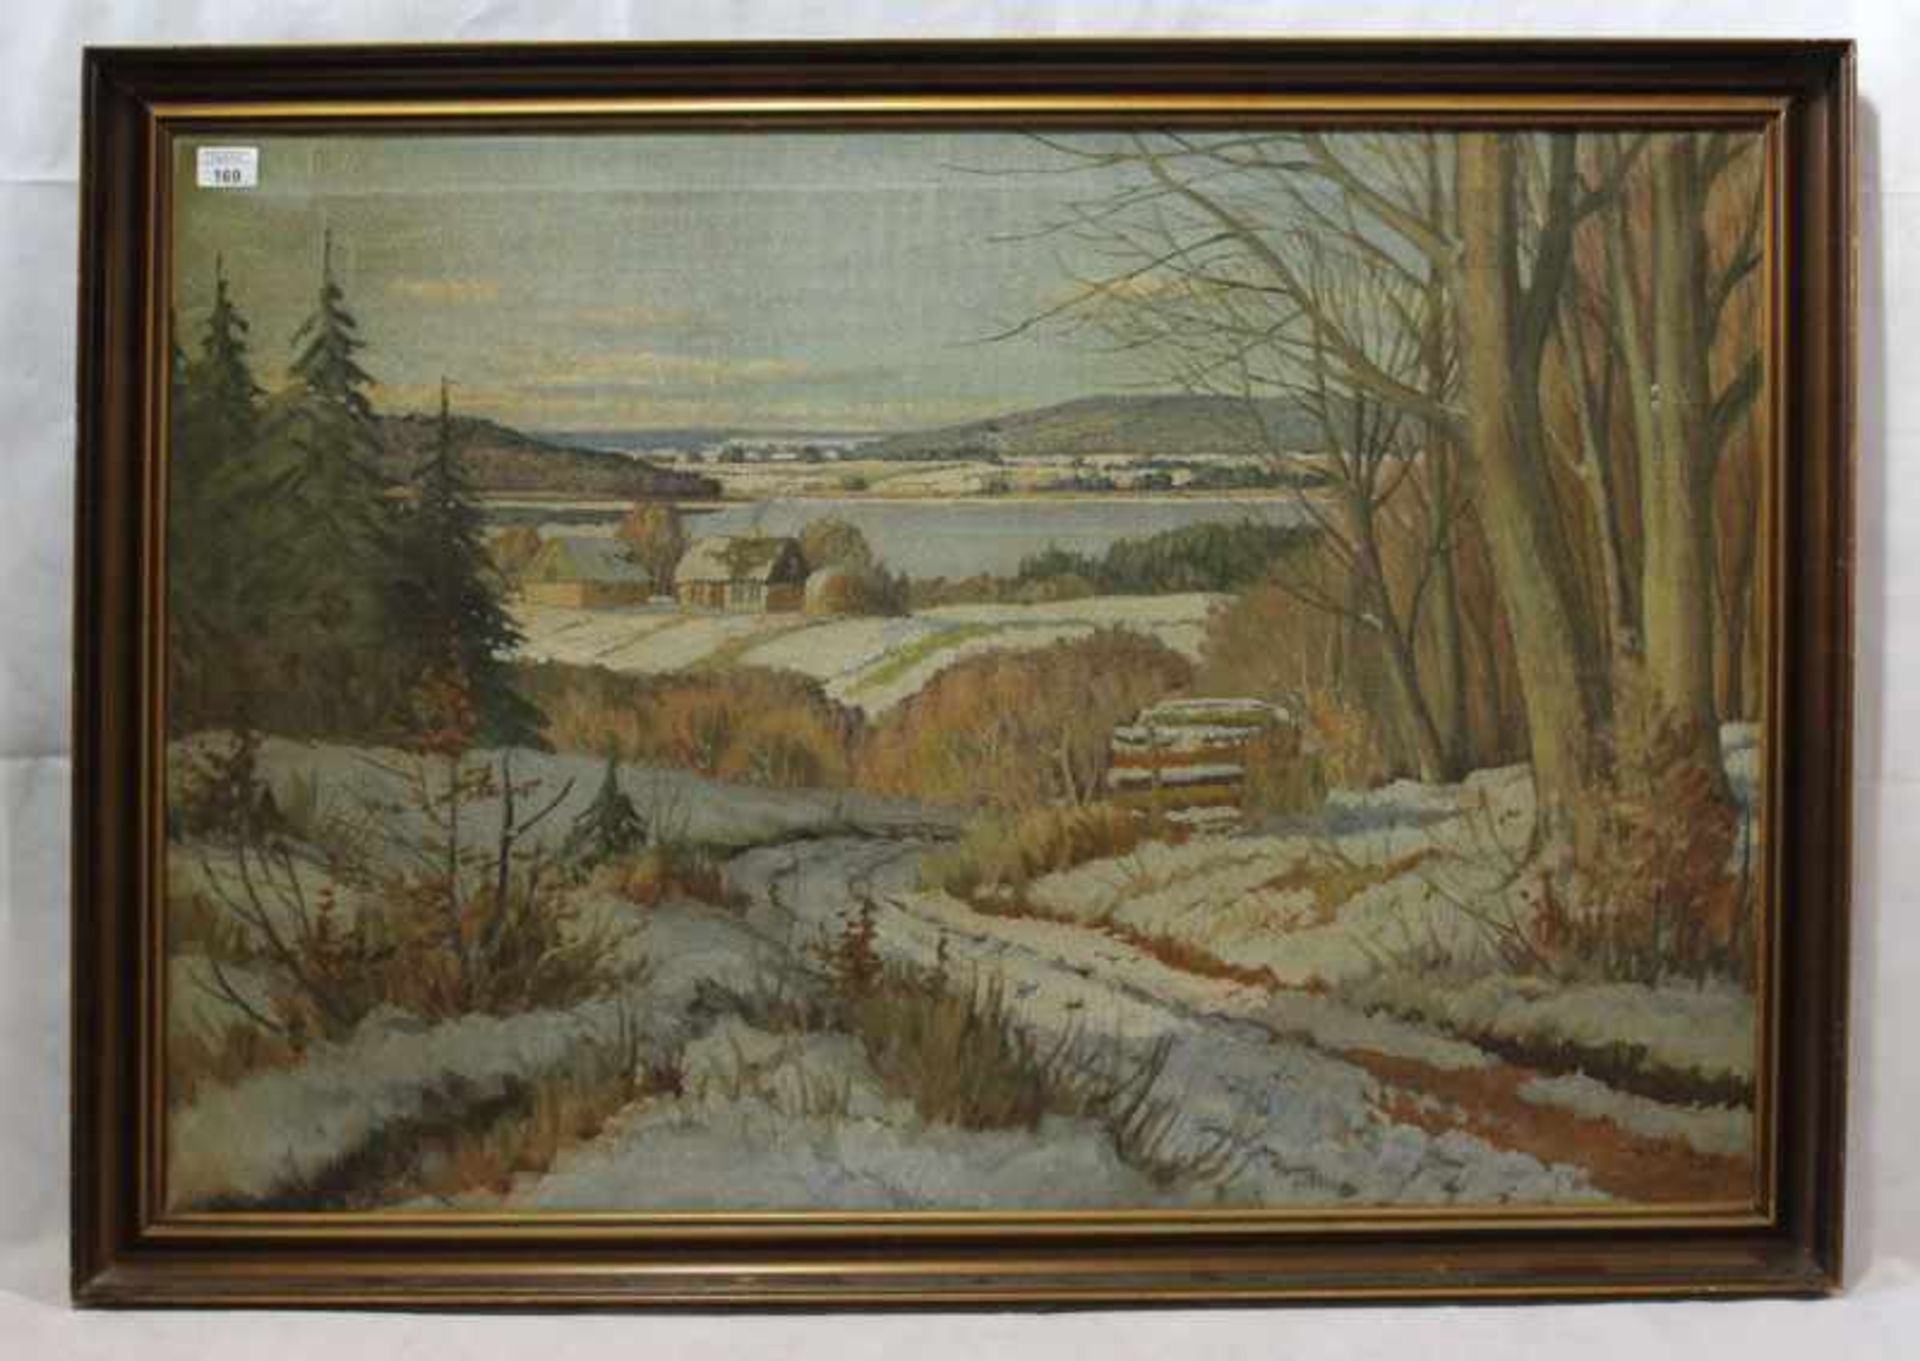 Gemälde ÖL/LW 'Landschafts-Szenerie im Winter', monogrammiert Th. C., datiert 1942, LW beschädigt,